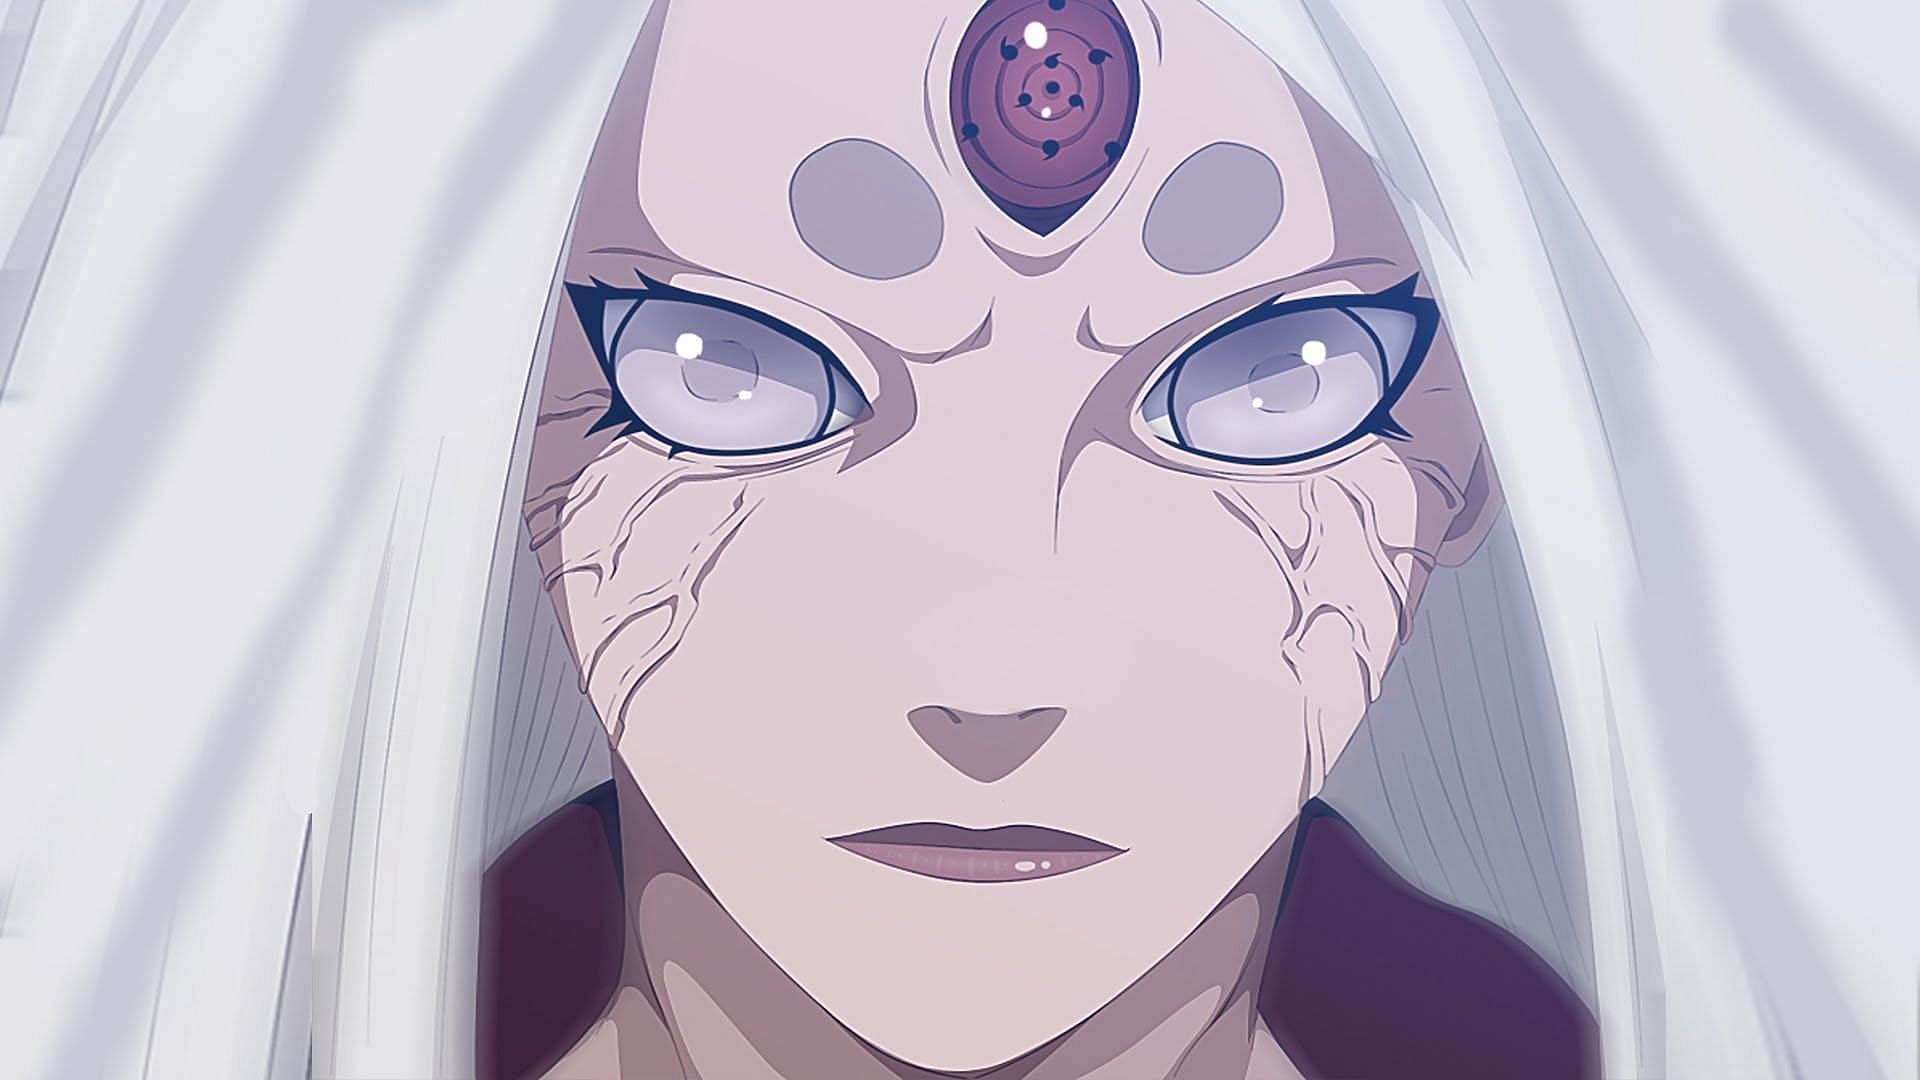 The Rinnegan eye on the right (Image via Masashi Kishimoto/Shueisha, Viz, Naruto)